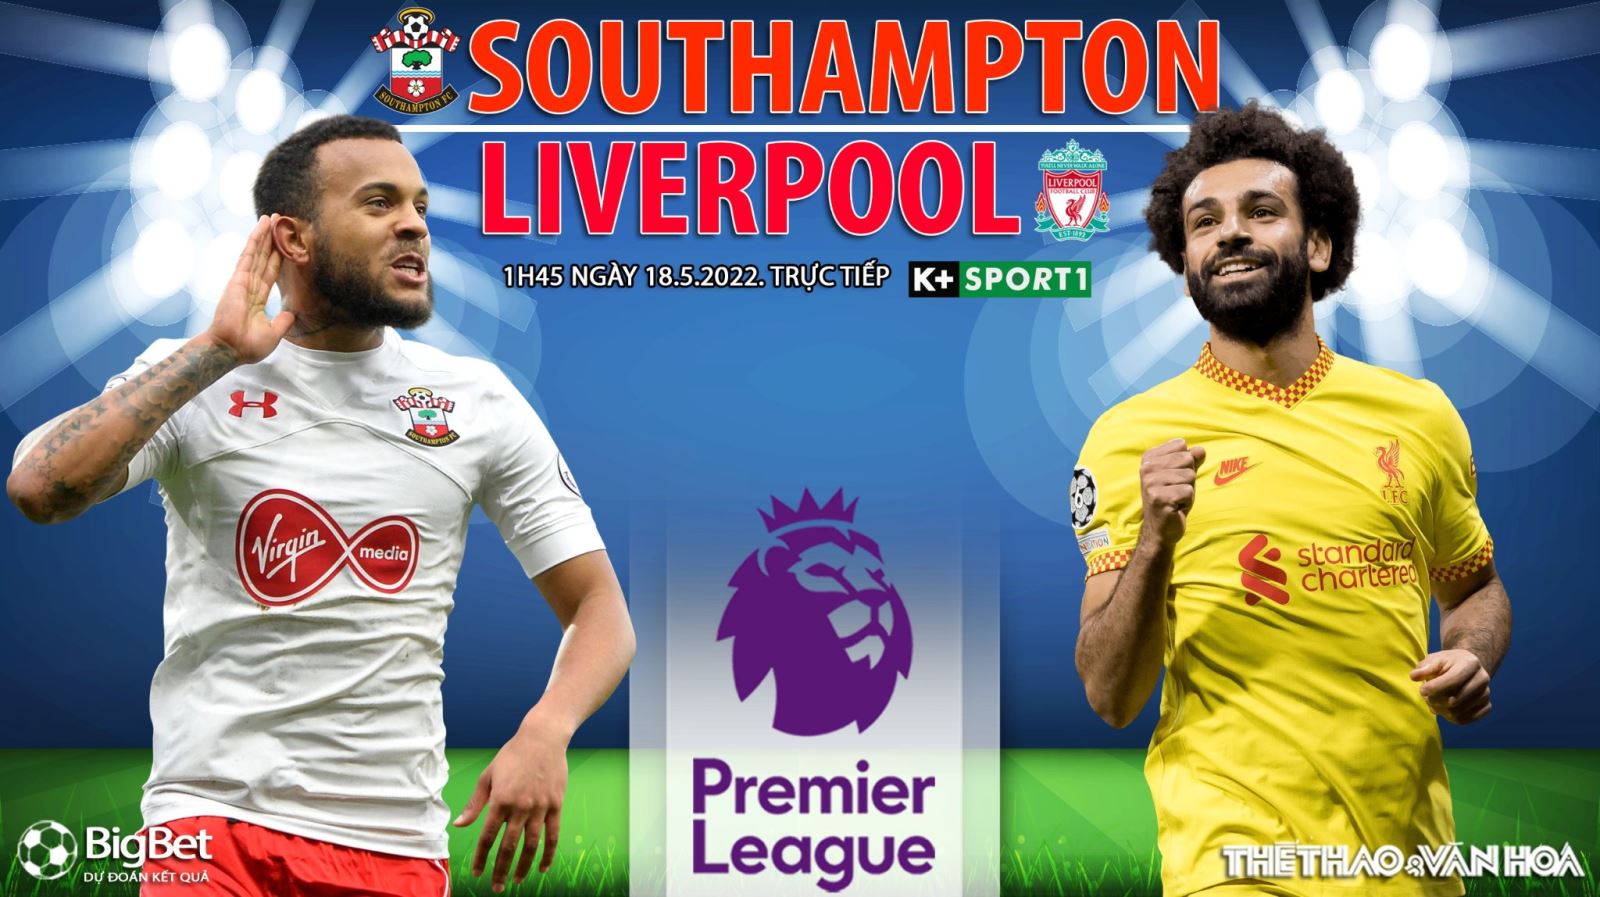 Soi kèo nhà cái Southampton vs Liverpool. K+SPORT1 trực tiếp bóng đá Ngoại hạng Anh (1h45, 18/5)